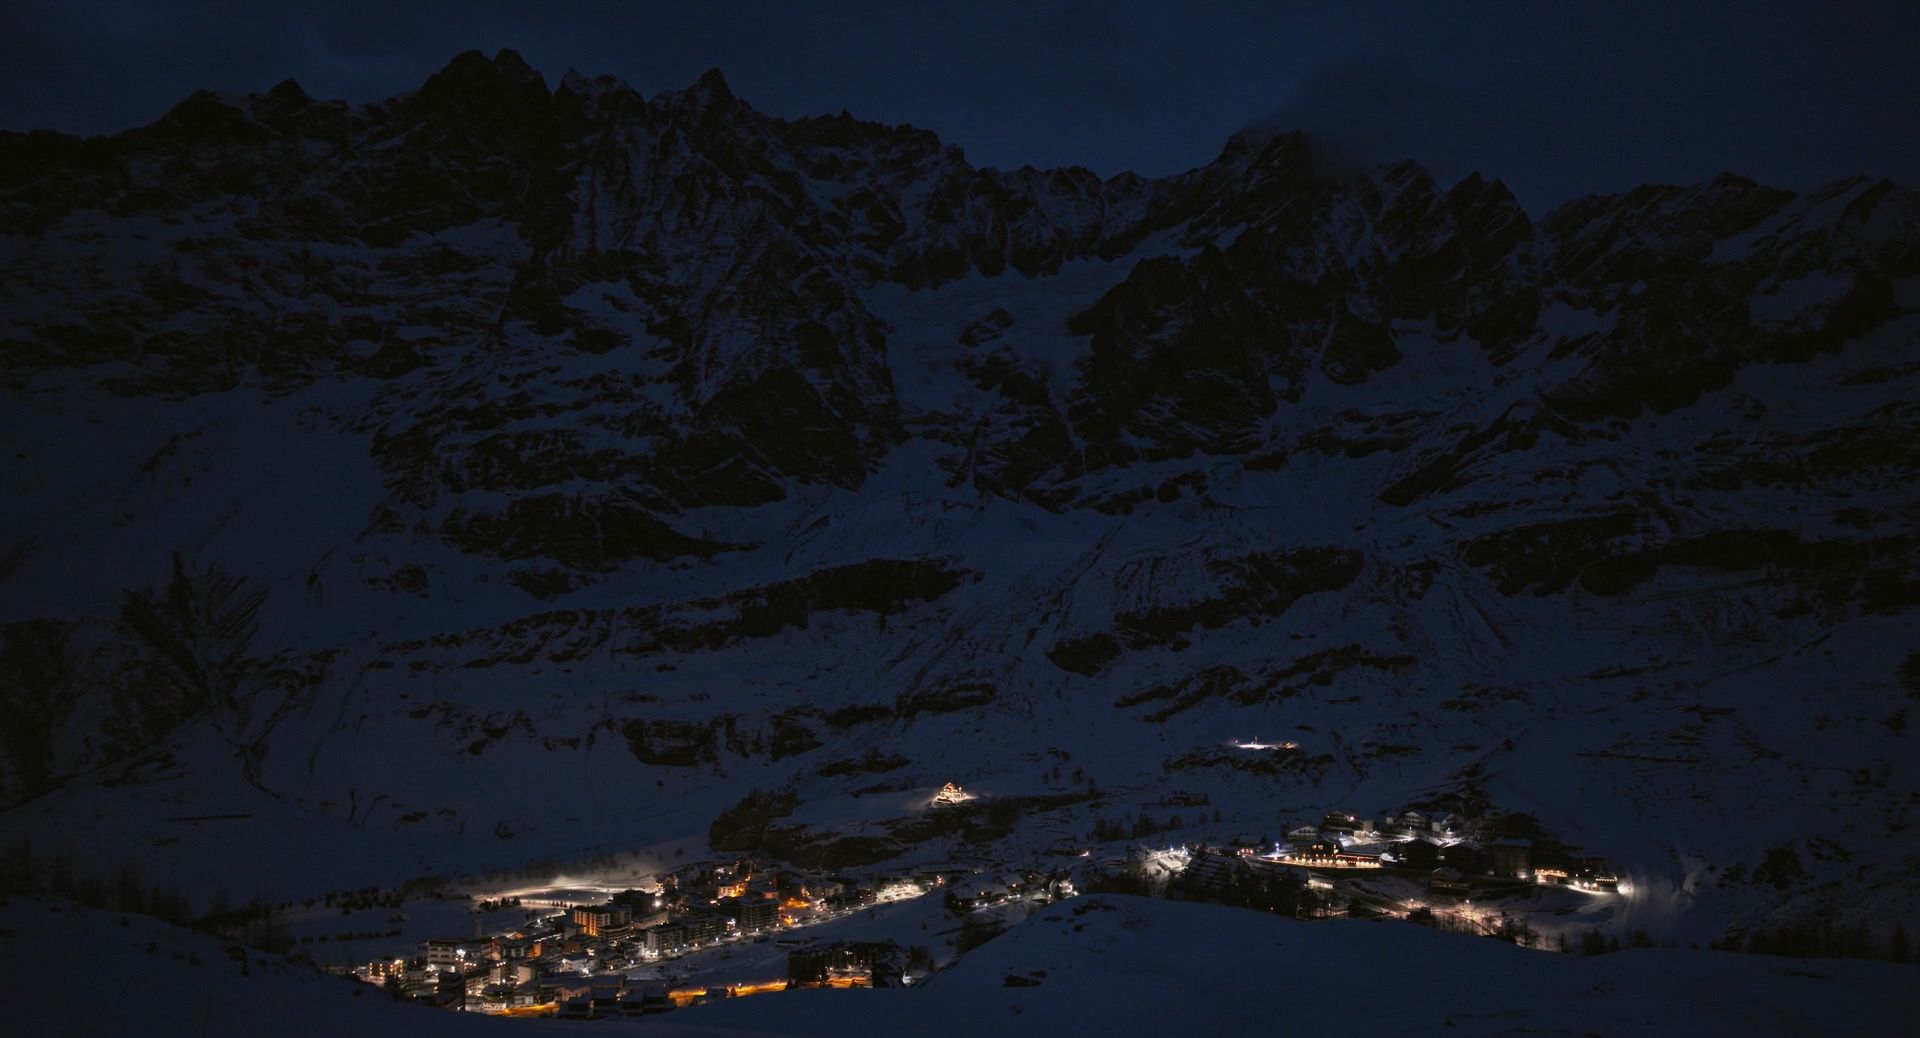 estacion esqui zermatt